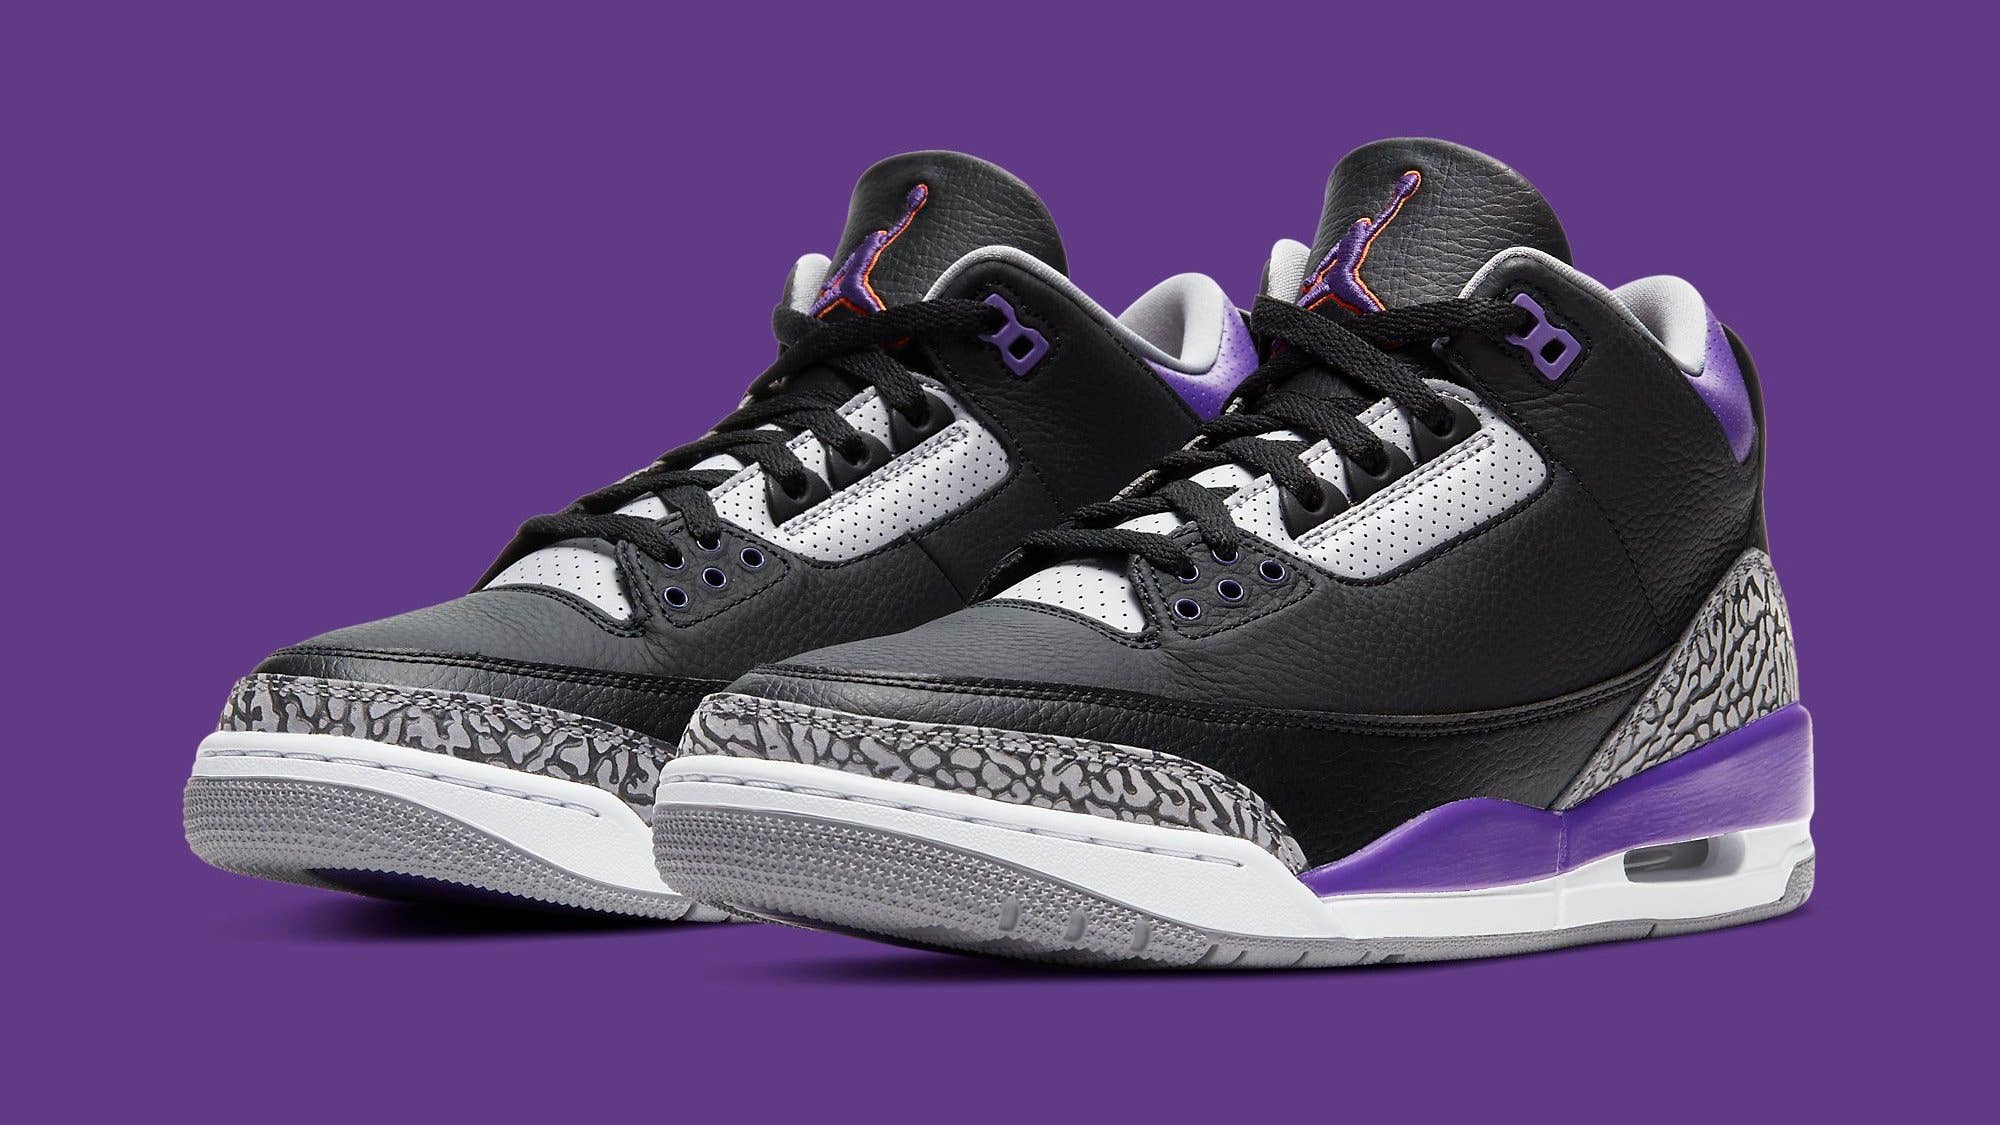 Air Jordan 3 Retro 'Court Purple' CT8532 050 Pair